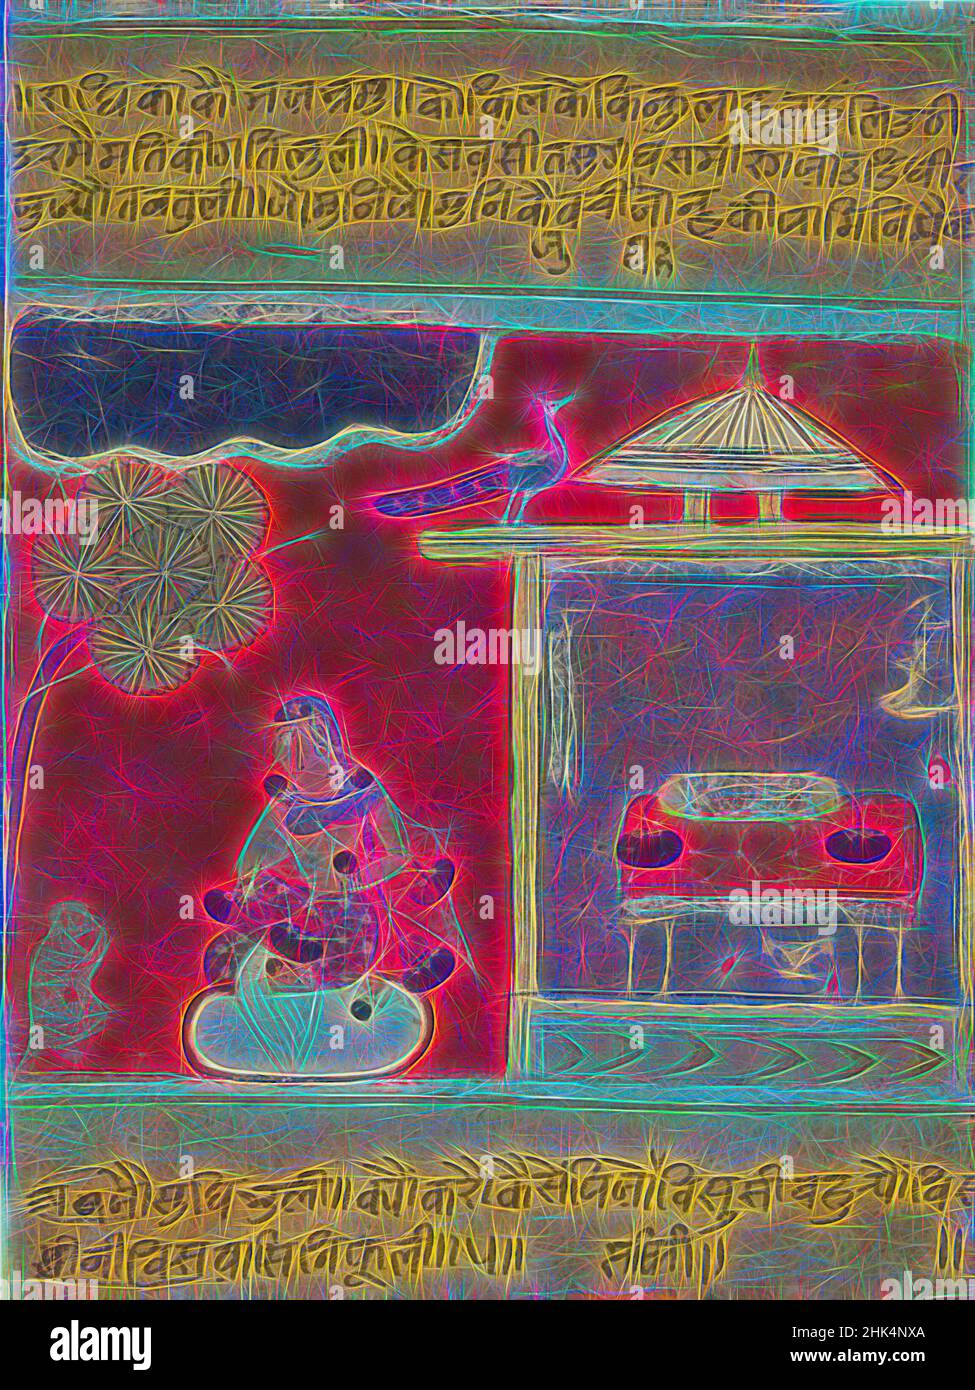 Inspiriert von Radha, die nach ihrem Geliebten piniert, Seite aus einer datierten Rasikapriya-Serie, indisch, opakes Aquarell und Gold auf Papier, Malwa, Indien, 1634, Blatt: 7 13/16 x 6 Zoll, 19,8 x 15,2 cm, Braj, Gold, Malwa, Affe, Papier, Pfau, Radha, Rajasthan Schule, Rasikapriya, Rosetten, Trennung, Aquarell, neu gestaltet von Artotop. Klassische Kunst neu erfunden mit einem modernen Twist. Design von warmen fröhlichen Leuchten der Helligkeit und Lichtstrahl Strahlkraft. Fotografie inspiriert von Surrealismus und Futurismus, umarmt dynamische Energie der modernen Technologie, Bewegung, Geschwindigkeit und Kultur zu revolutionieren Stockfoto